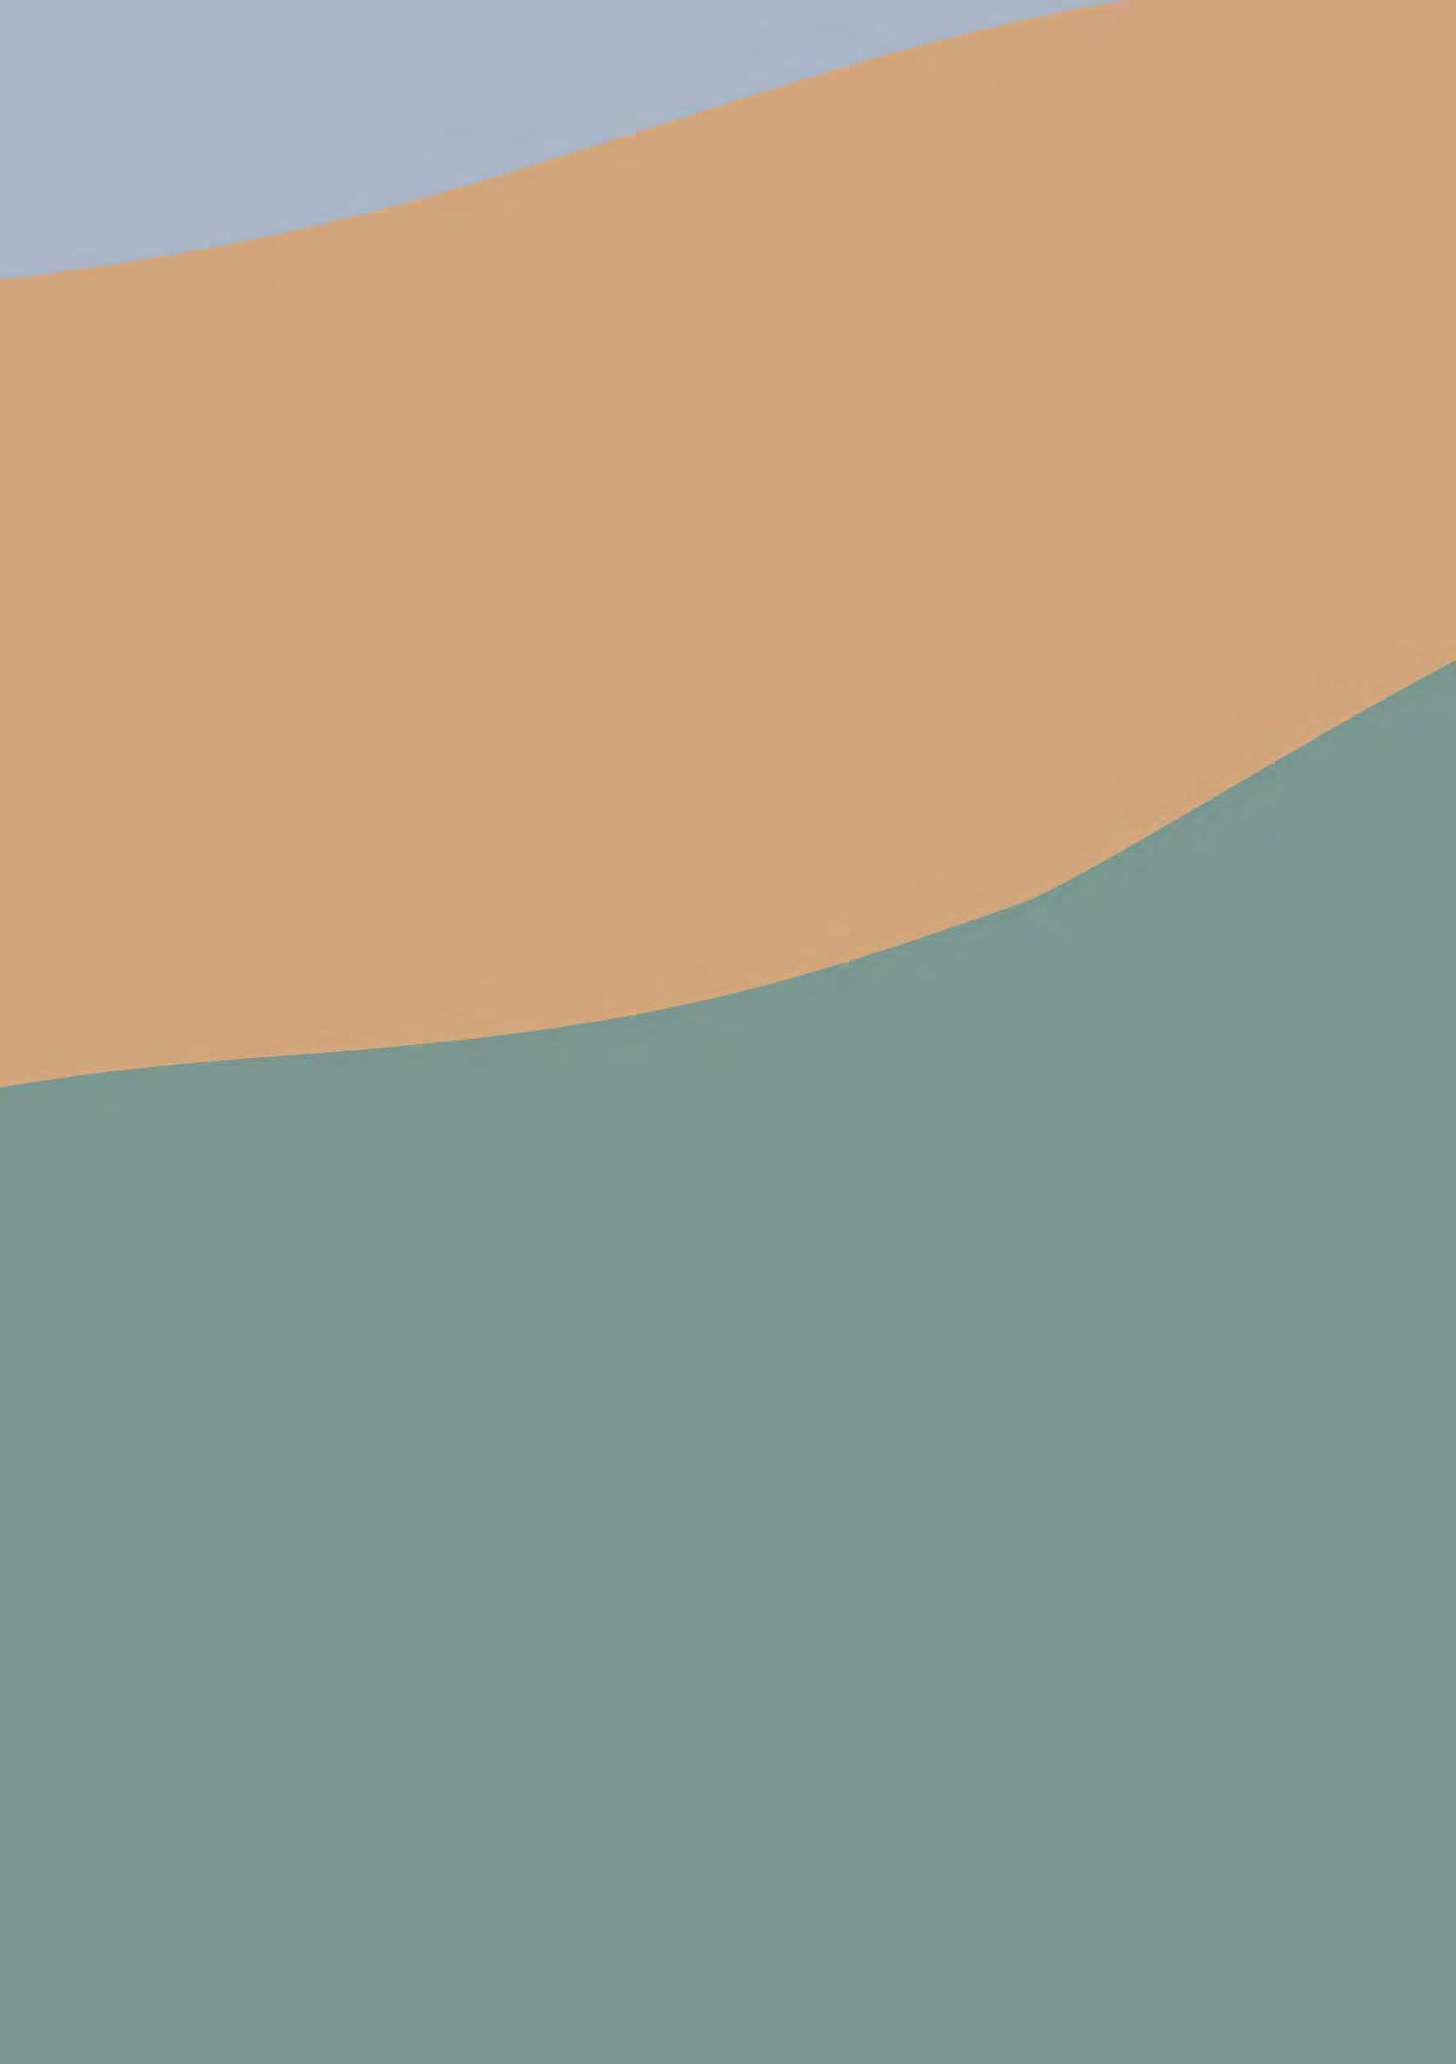 Composição abstrata, uma página dividida em três faixas coloridas: uma azul acinzentada no canto superior esquerdo, estreita; uma bege imediatamente abaixo, um pouco mais larga; uma verde escuro mais abaixo, ainda mais larga. As faixas sobem ligeiramente da esquerda para a direita